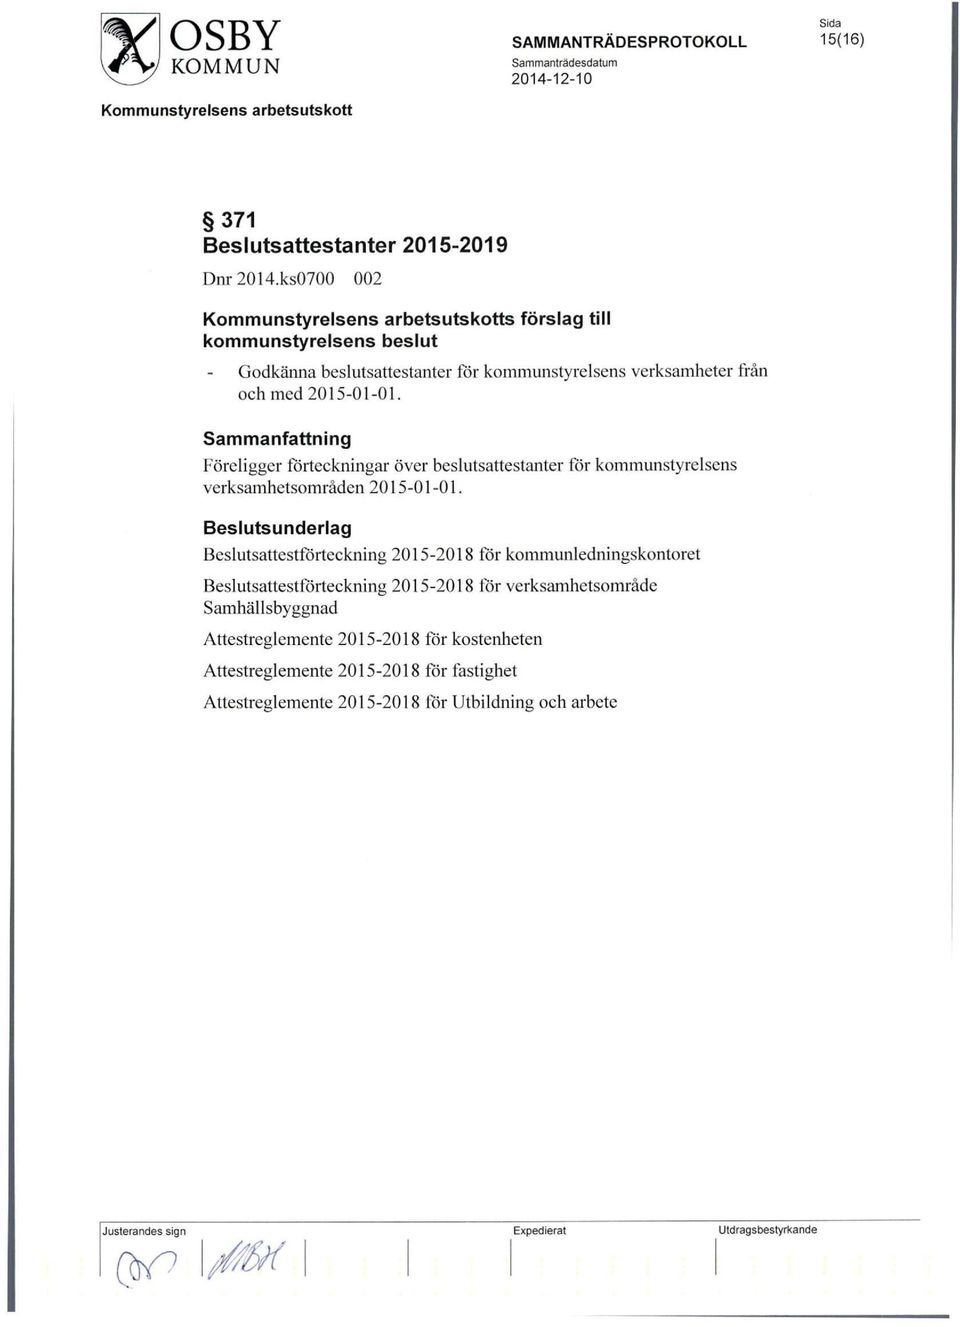 Foreligger forteckningar over beslutsattestanter for kommunstyrelsens verksamhetsomraden 2015-01-01.